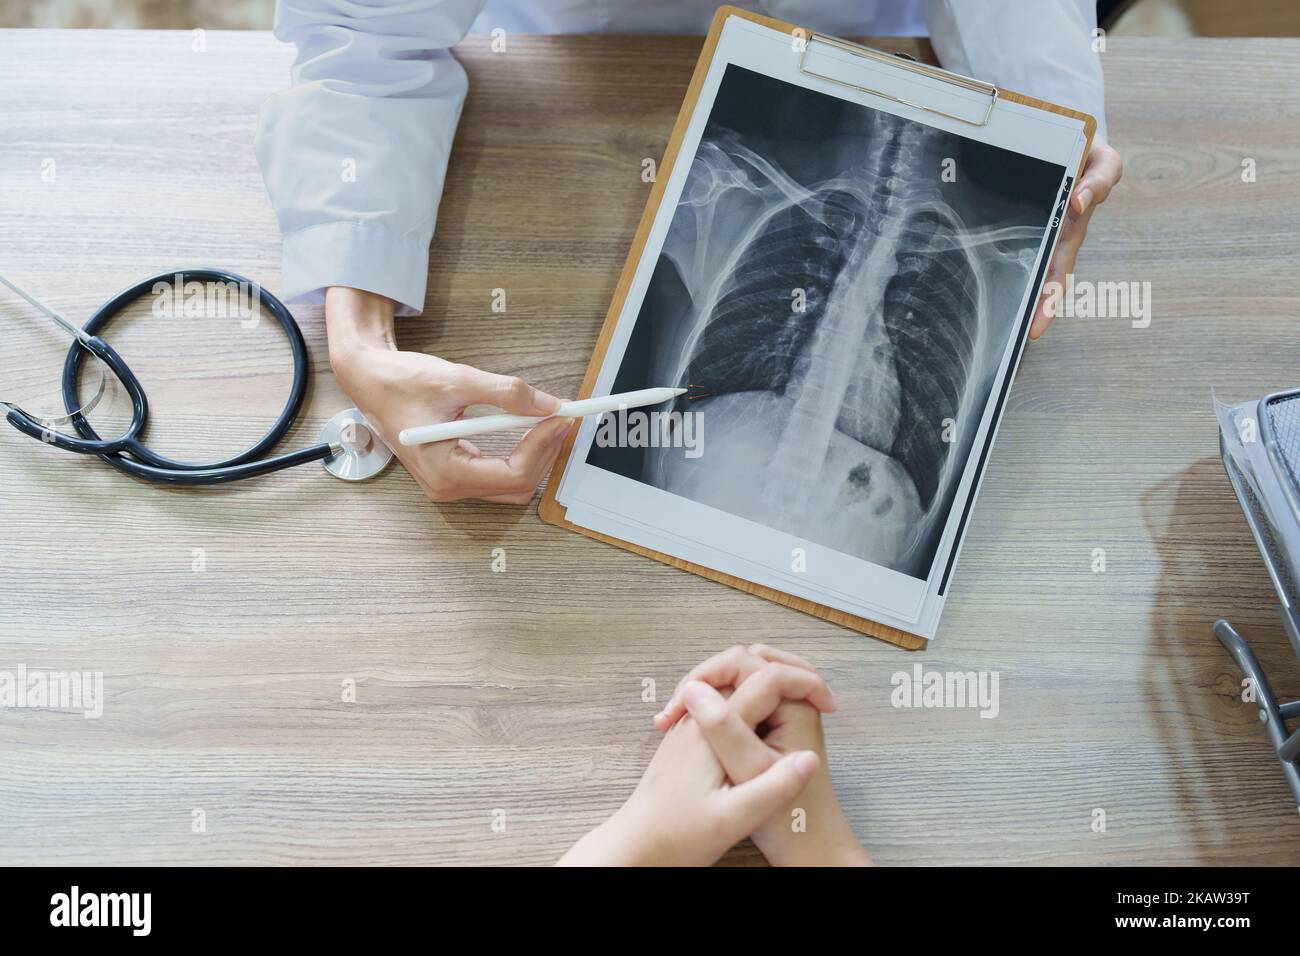 Une femme asiatique signale un film radiographique pour expliquer le processus de traitement du patient Banque D'Images